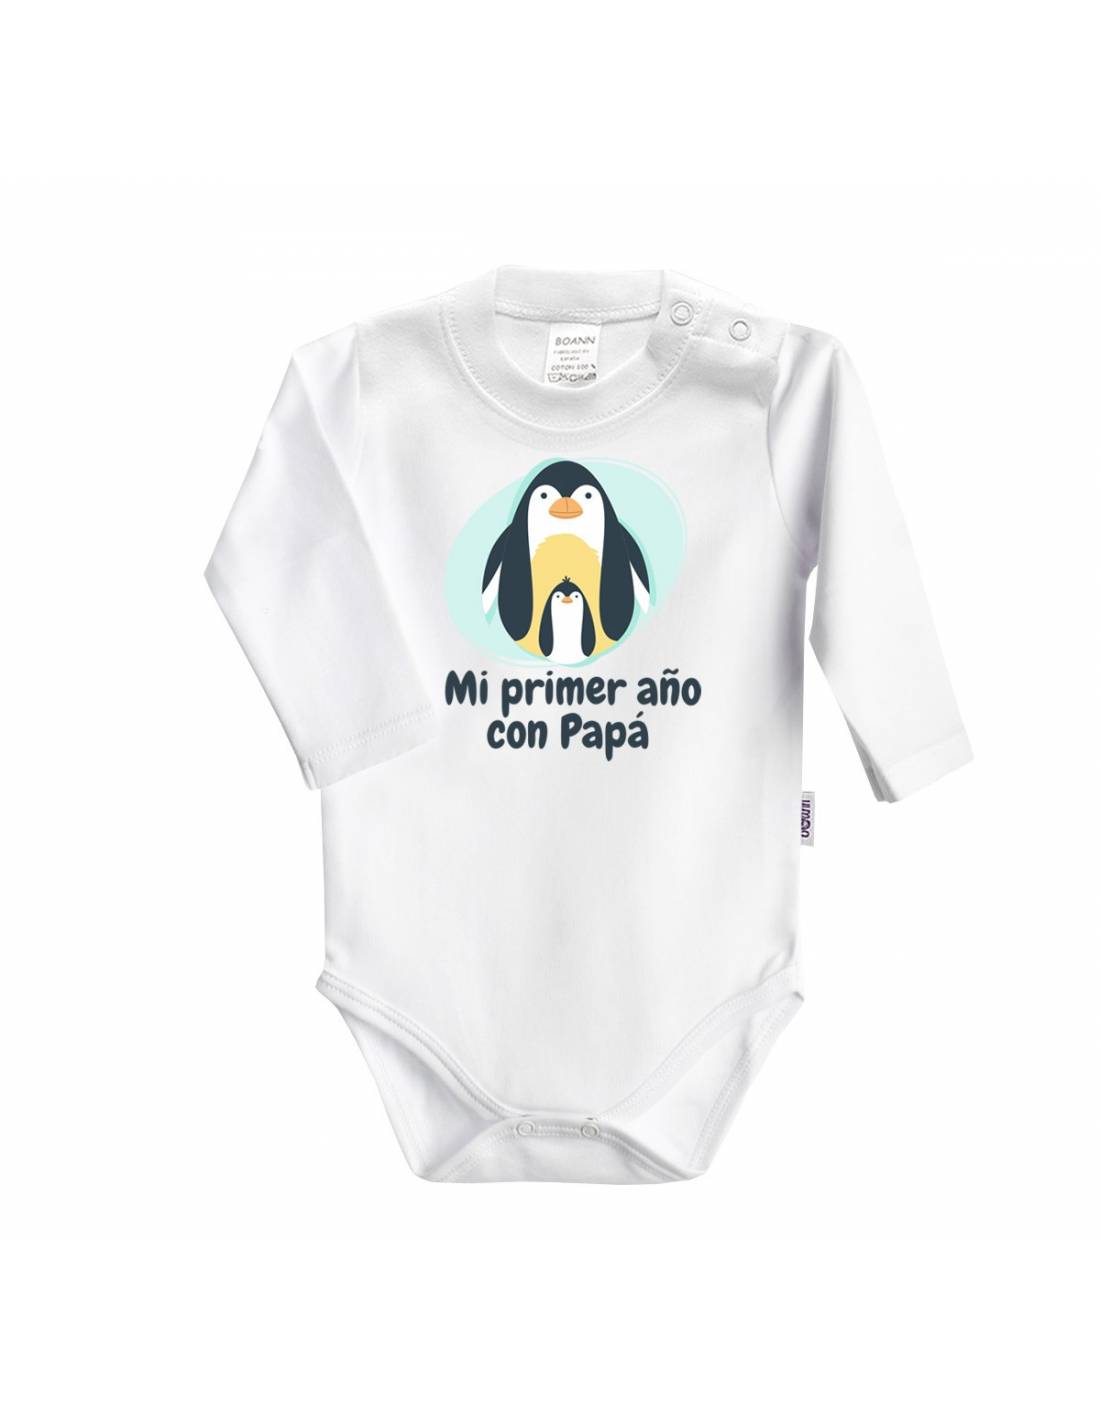 Encantada de conocerte Ocho Obligatorio Body bebé personalizado frase "mi primer año con papá" - Maxibebé